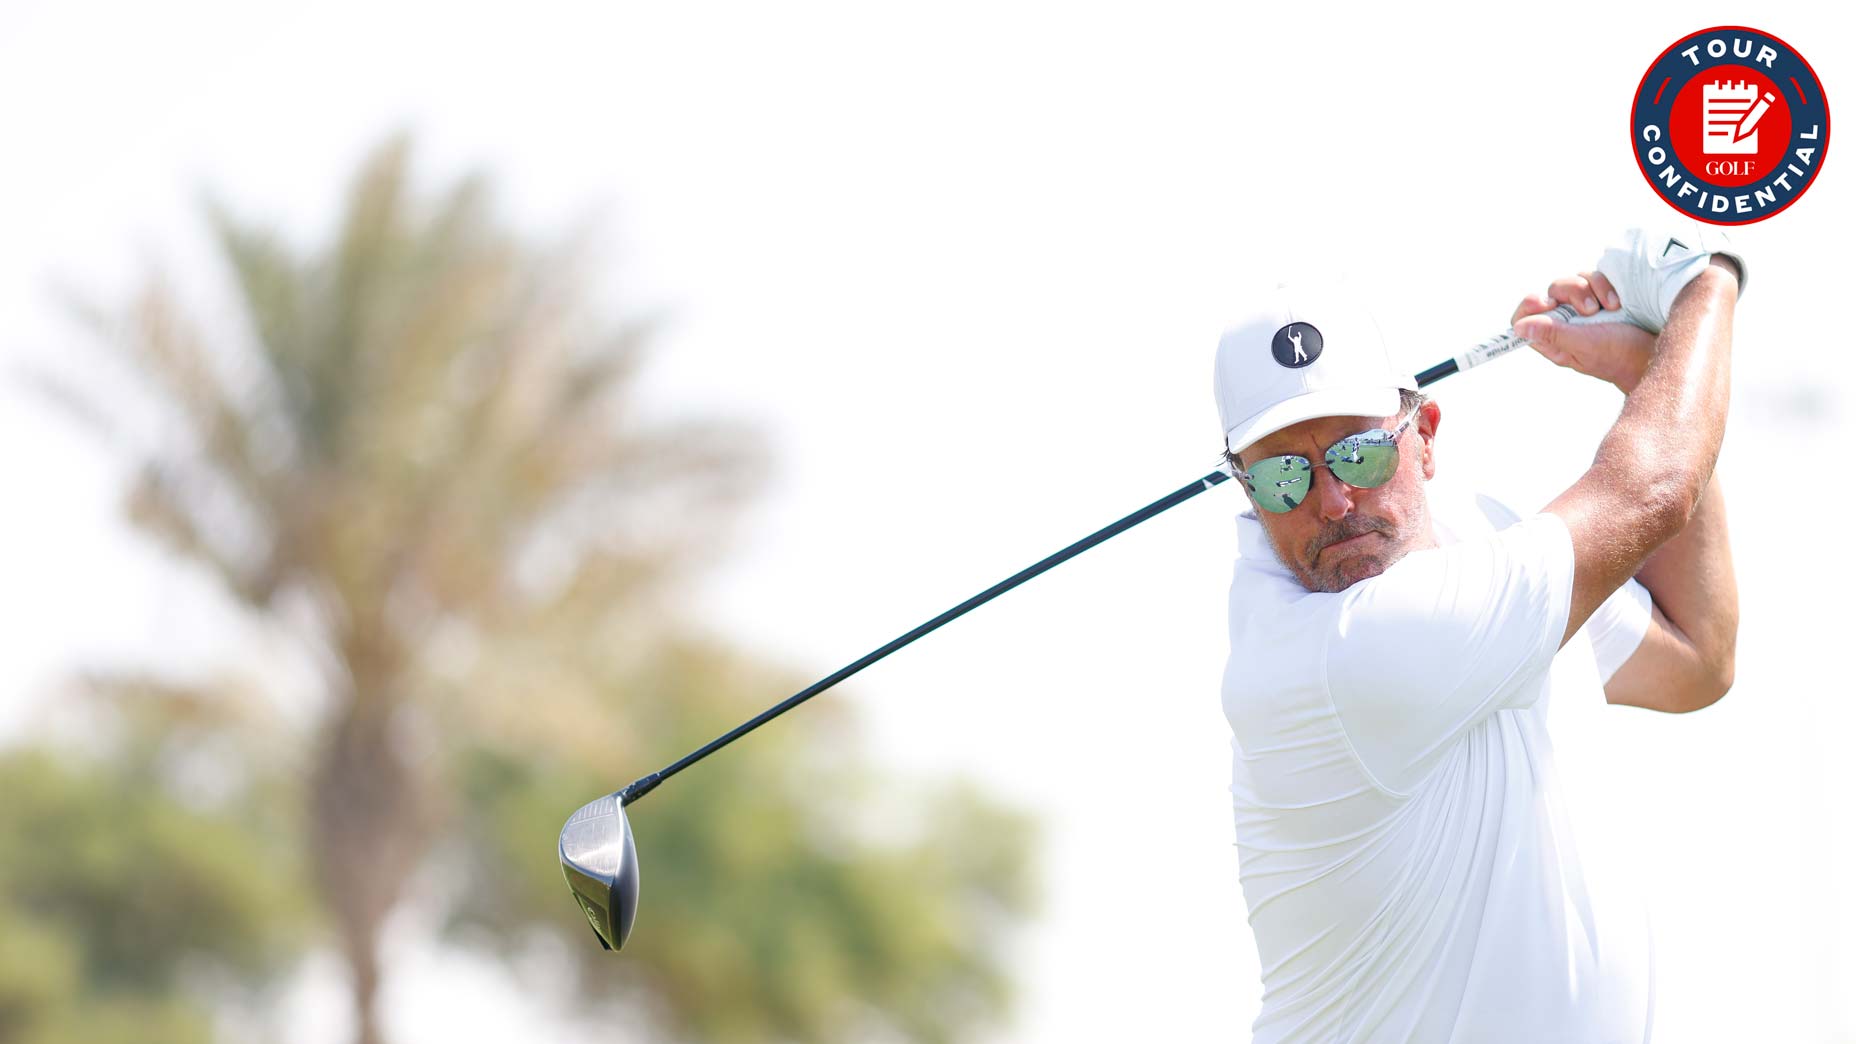 Golf news 2022: Adam Scott in discussions to join Saudi-back Super